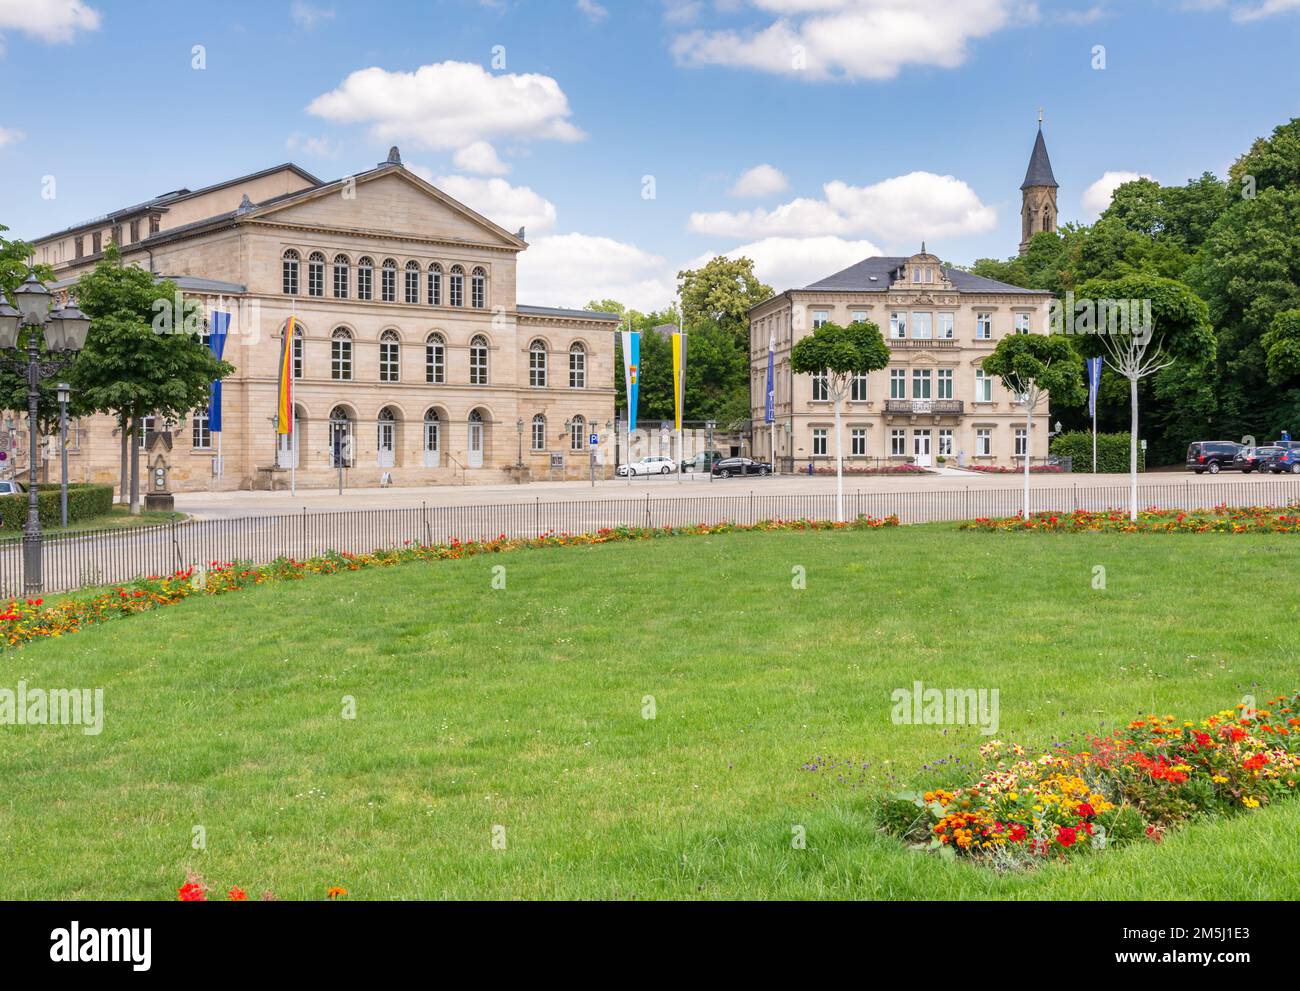 COBURG, Deutschland - Juni 20: Die neoklassische Theater (Landestheater) von Coburg, Deutschland am 20. Juni 2018. Stockfoto